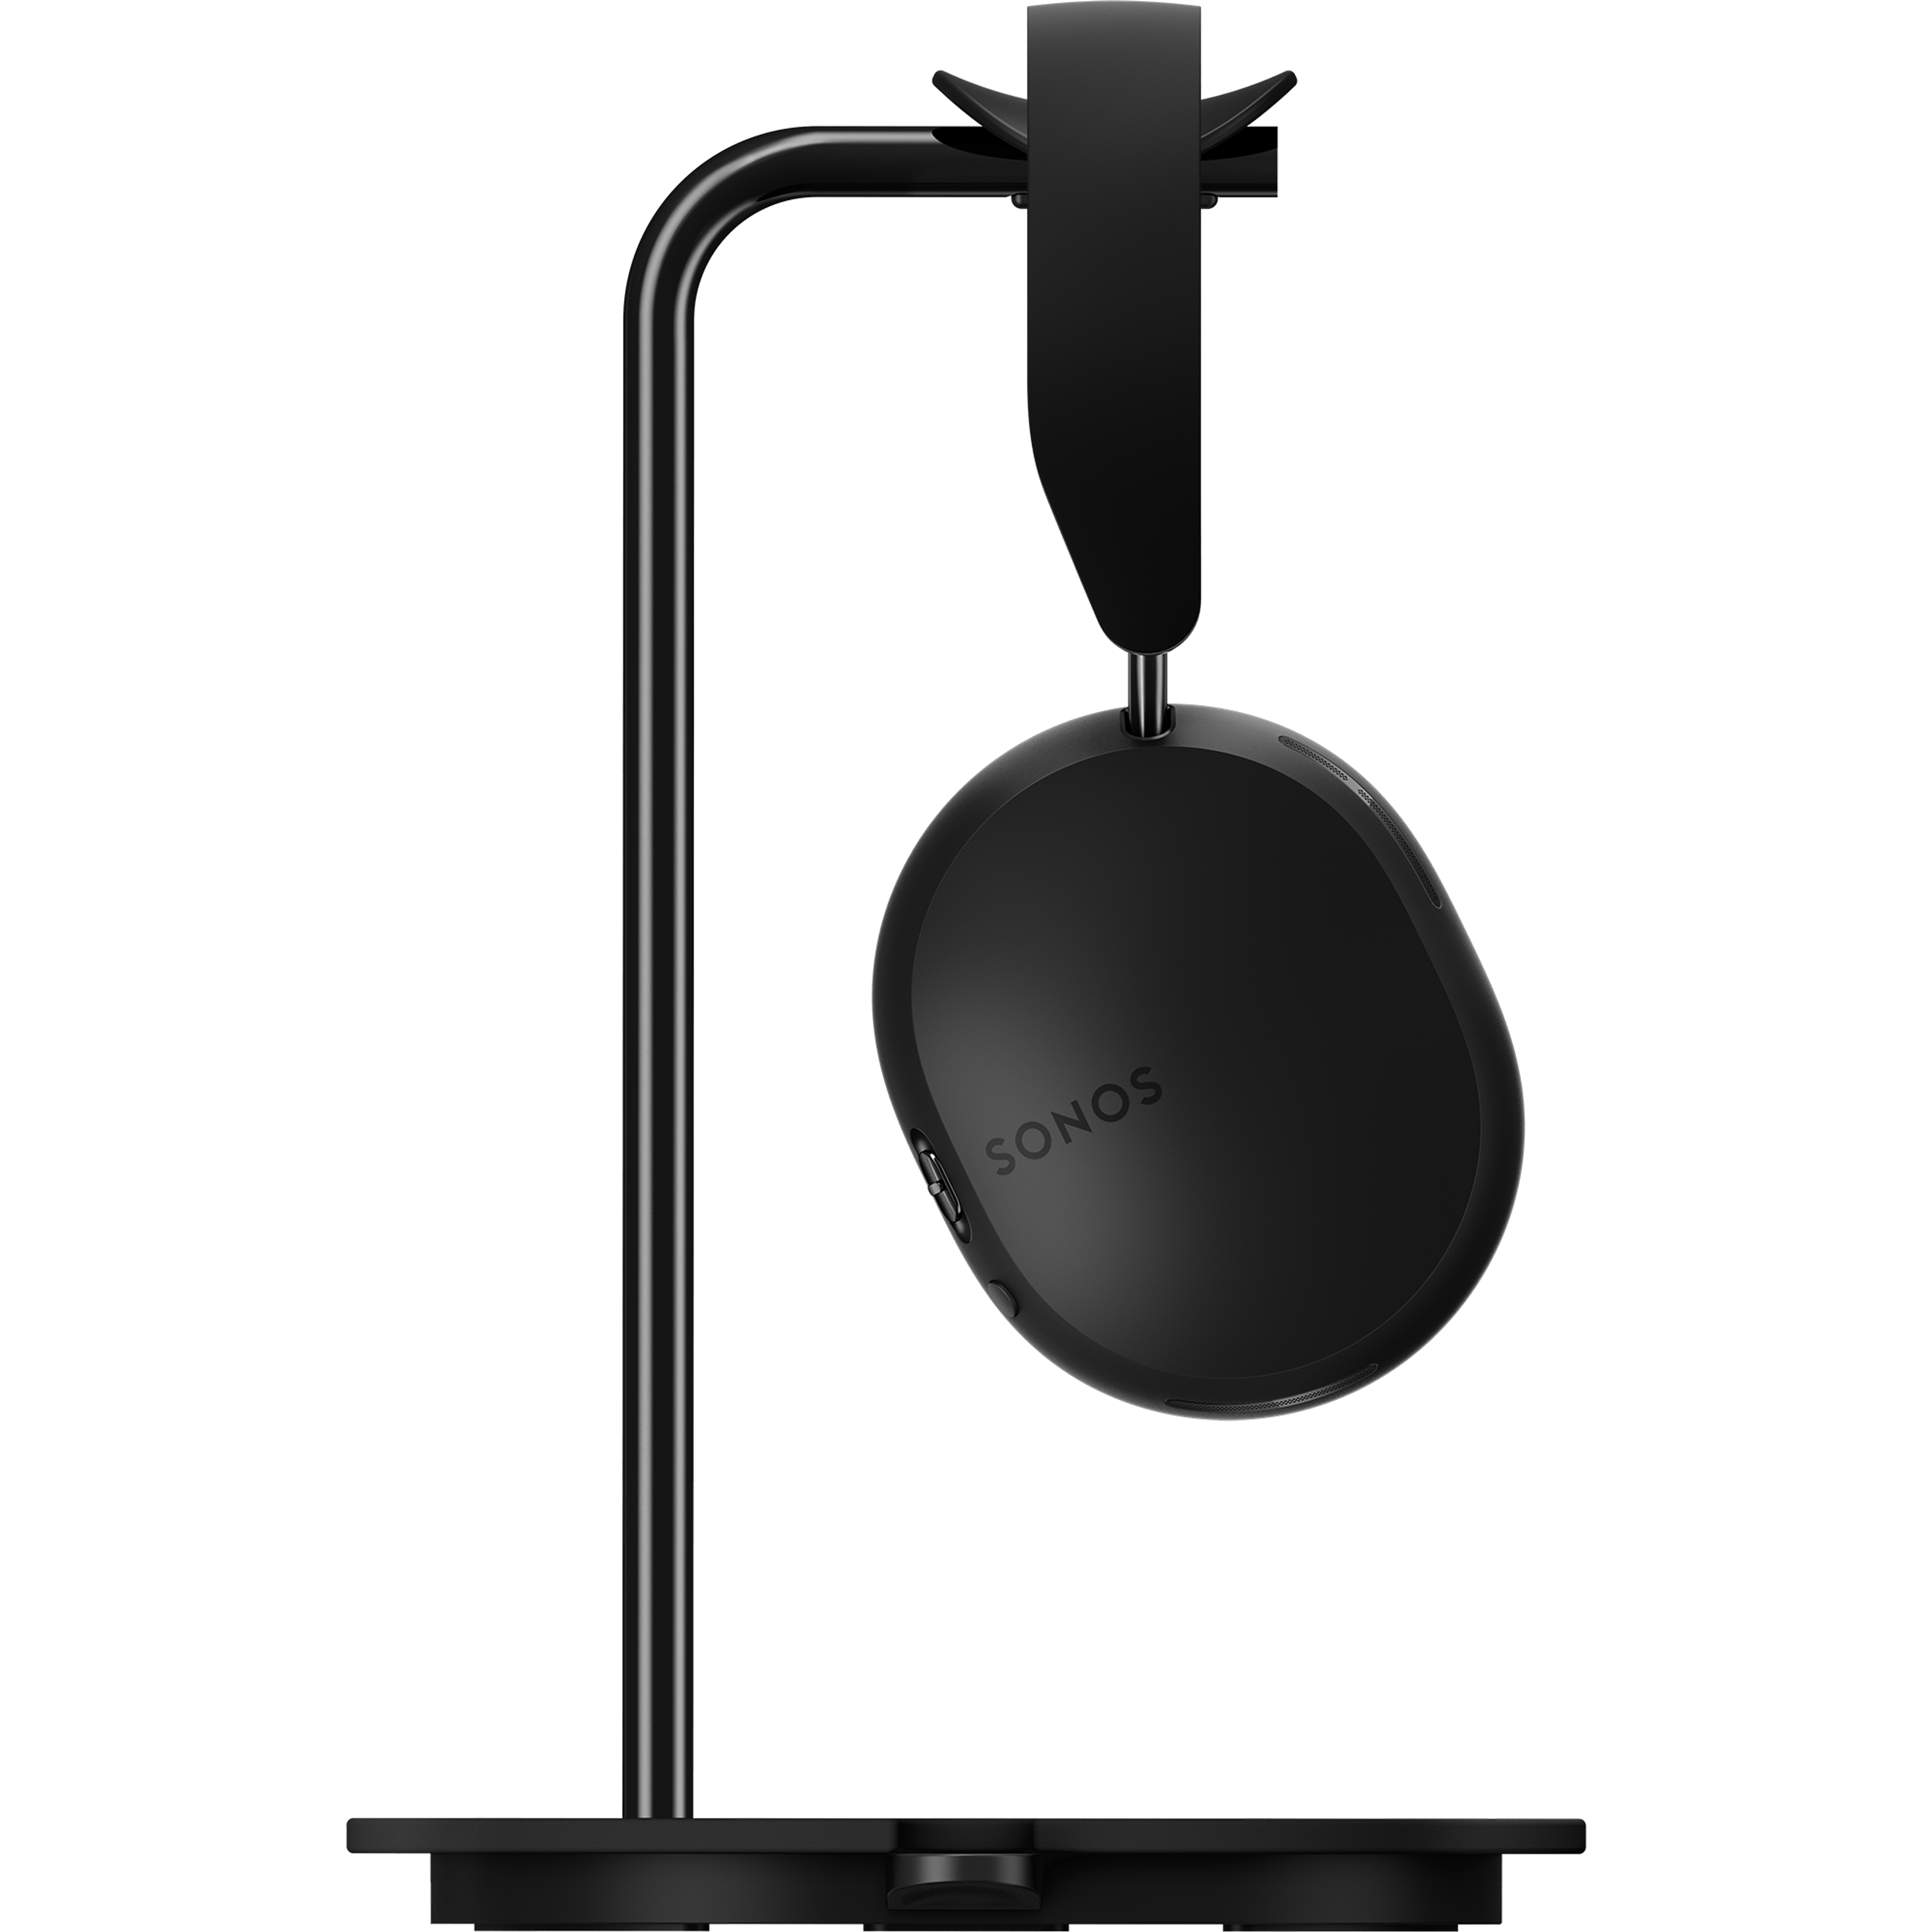 mustat Sonos Ace -kuulokkeet sivusta päin Sonos Ace -kuulokkeille tarkoitetussa Sanus-telineessä